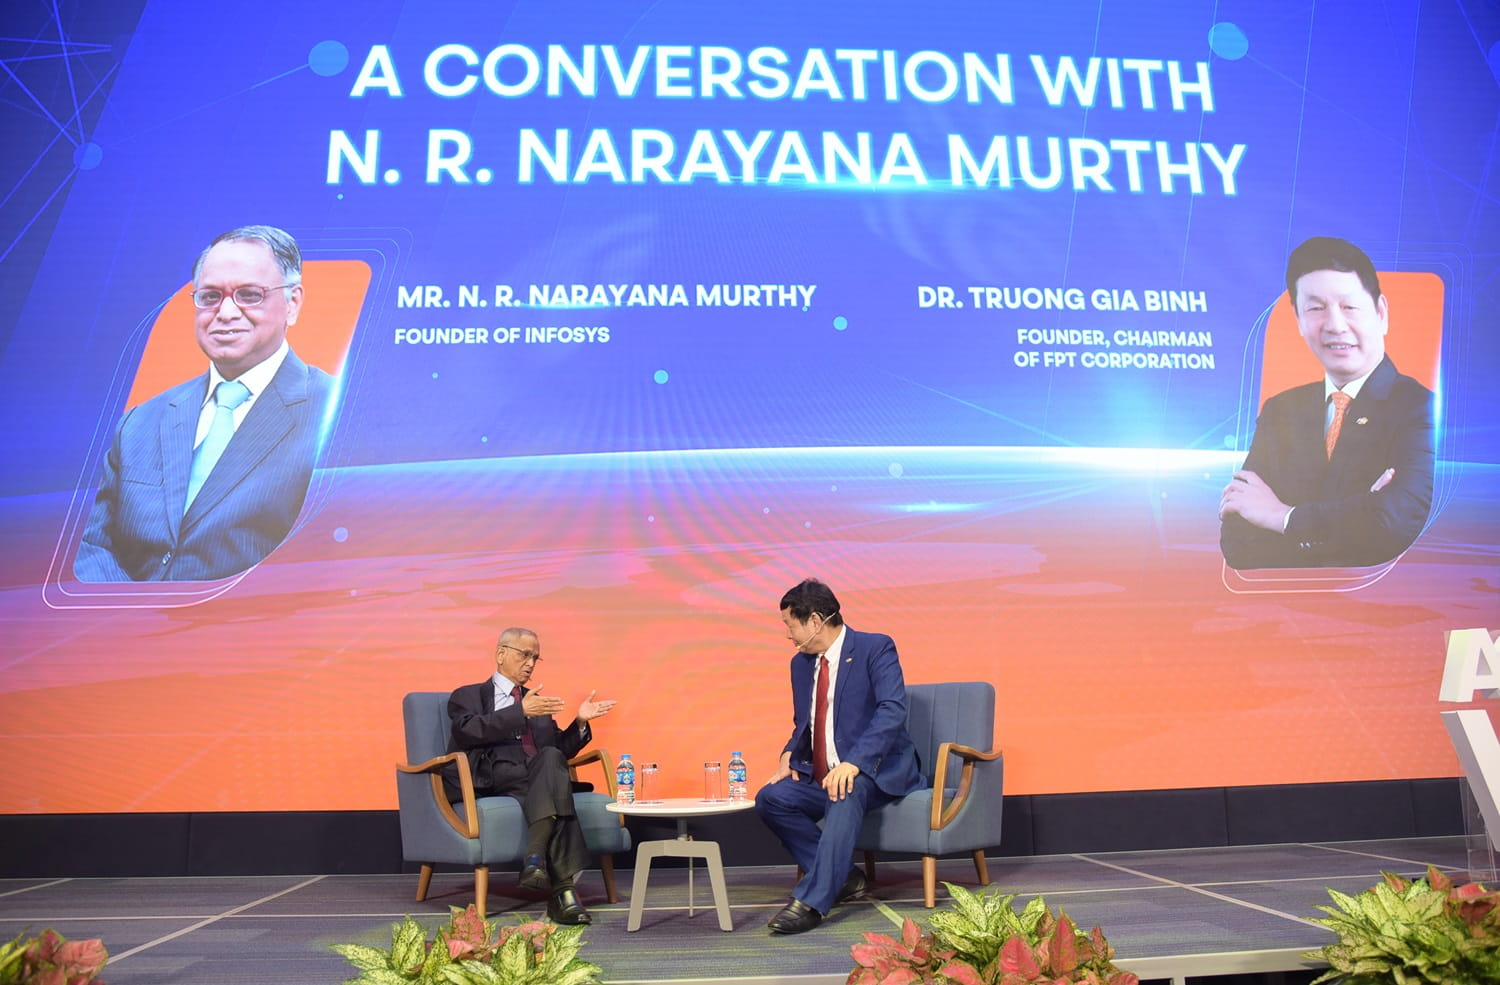 Ông Trương Gia Bình, Chủ tịch HĐQT FPT dẫn dắt màn đối thoại giữa Nhà sáng lập Infosys Narayana Murthy với giới CNTT Việt Nam chiều ngày 20/5